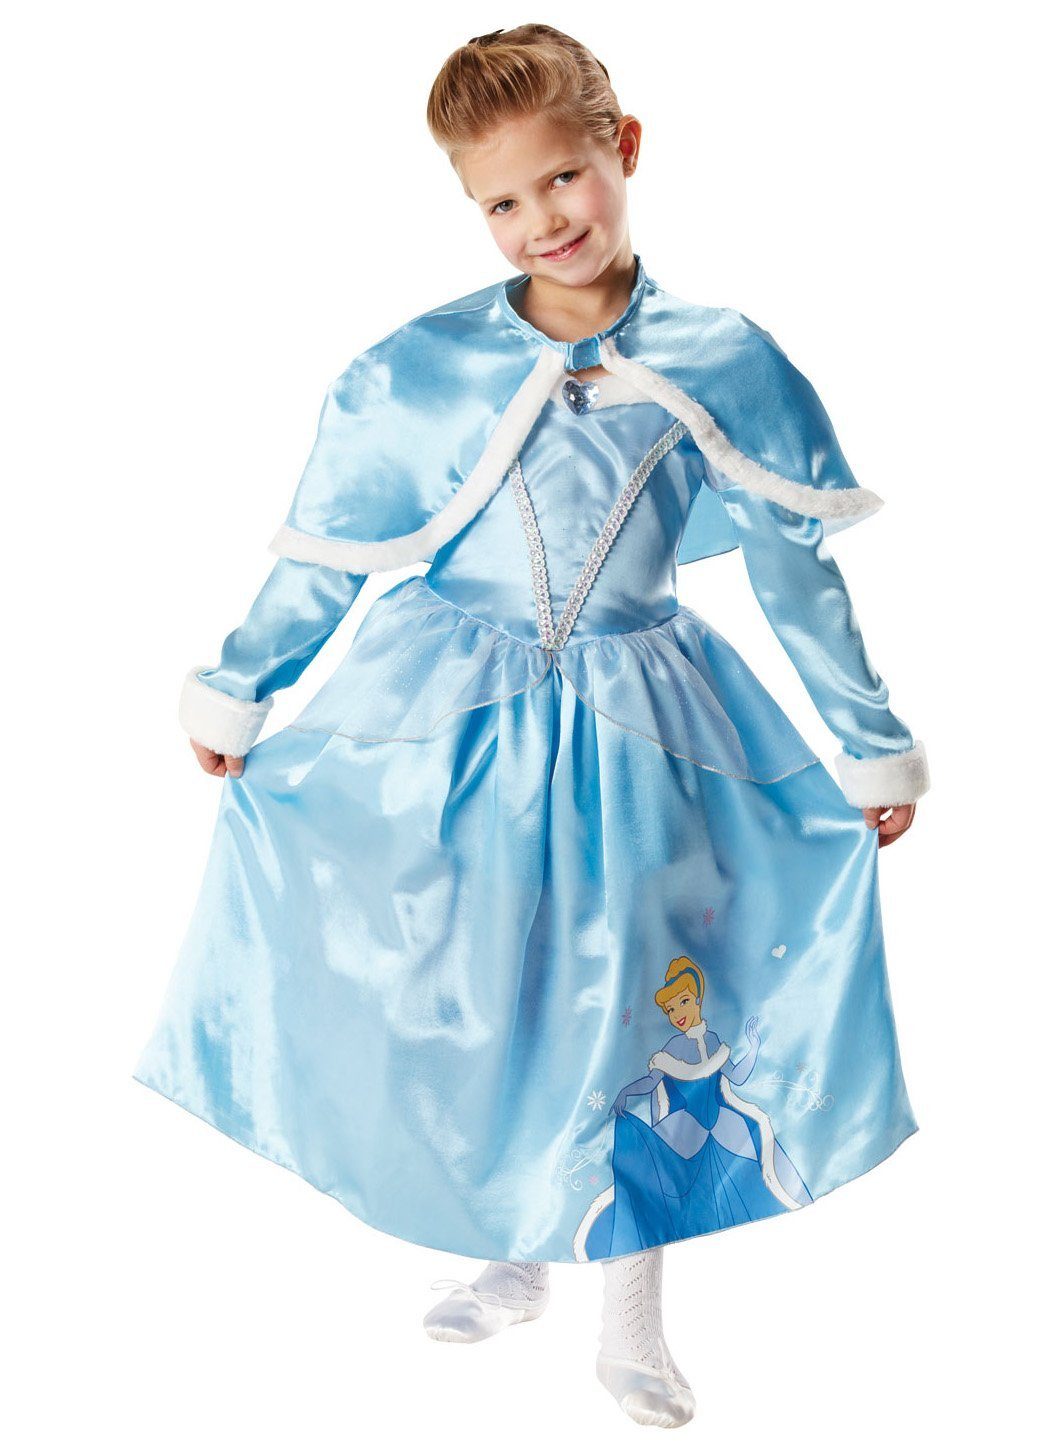 Rubie´s Kostüm Prinzessin Cinderella Winter Wonderland Größe 128, Klassische Märchenprinzessin aus dem Disney Universum im Winter-Look